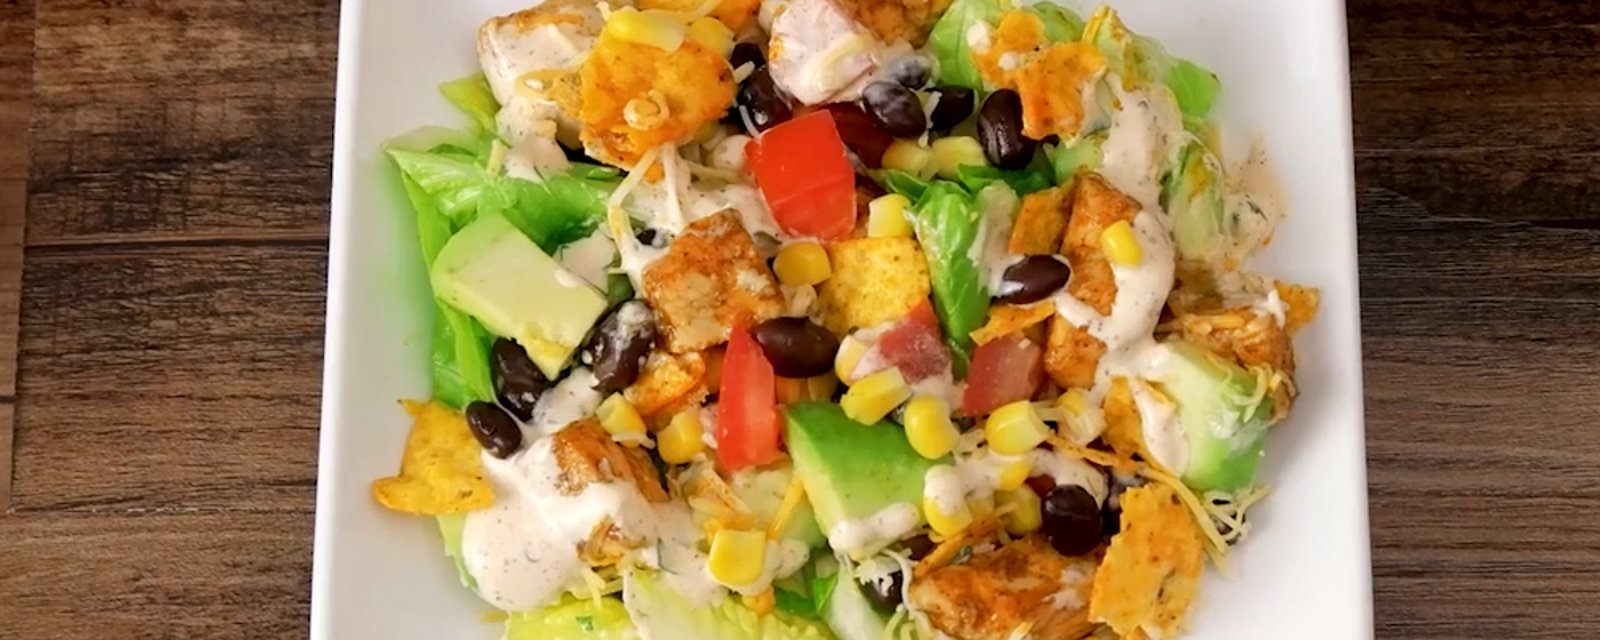 Salade mexicaine au poulet débordante de saveurs